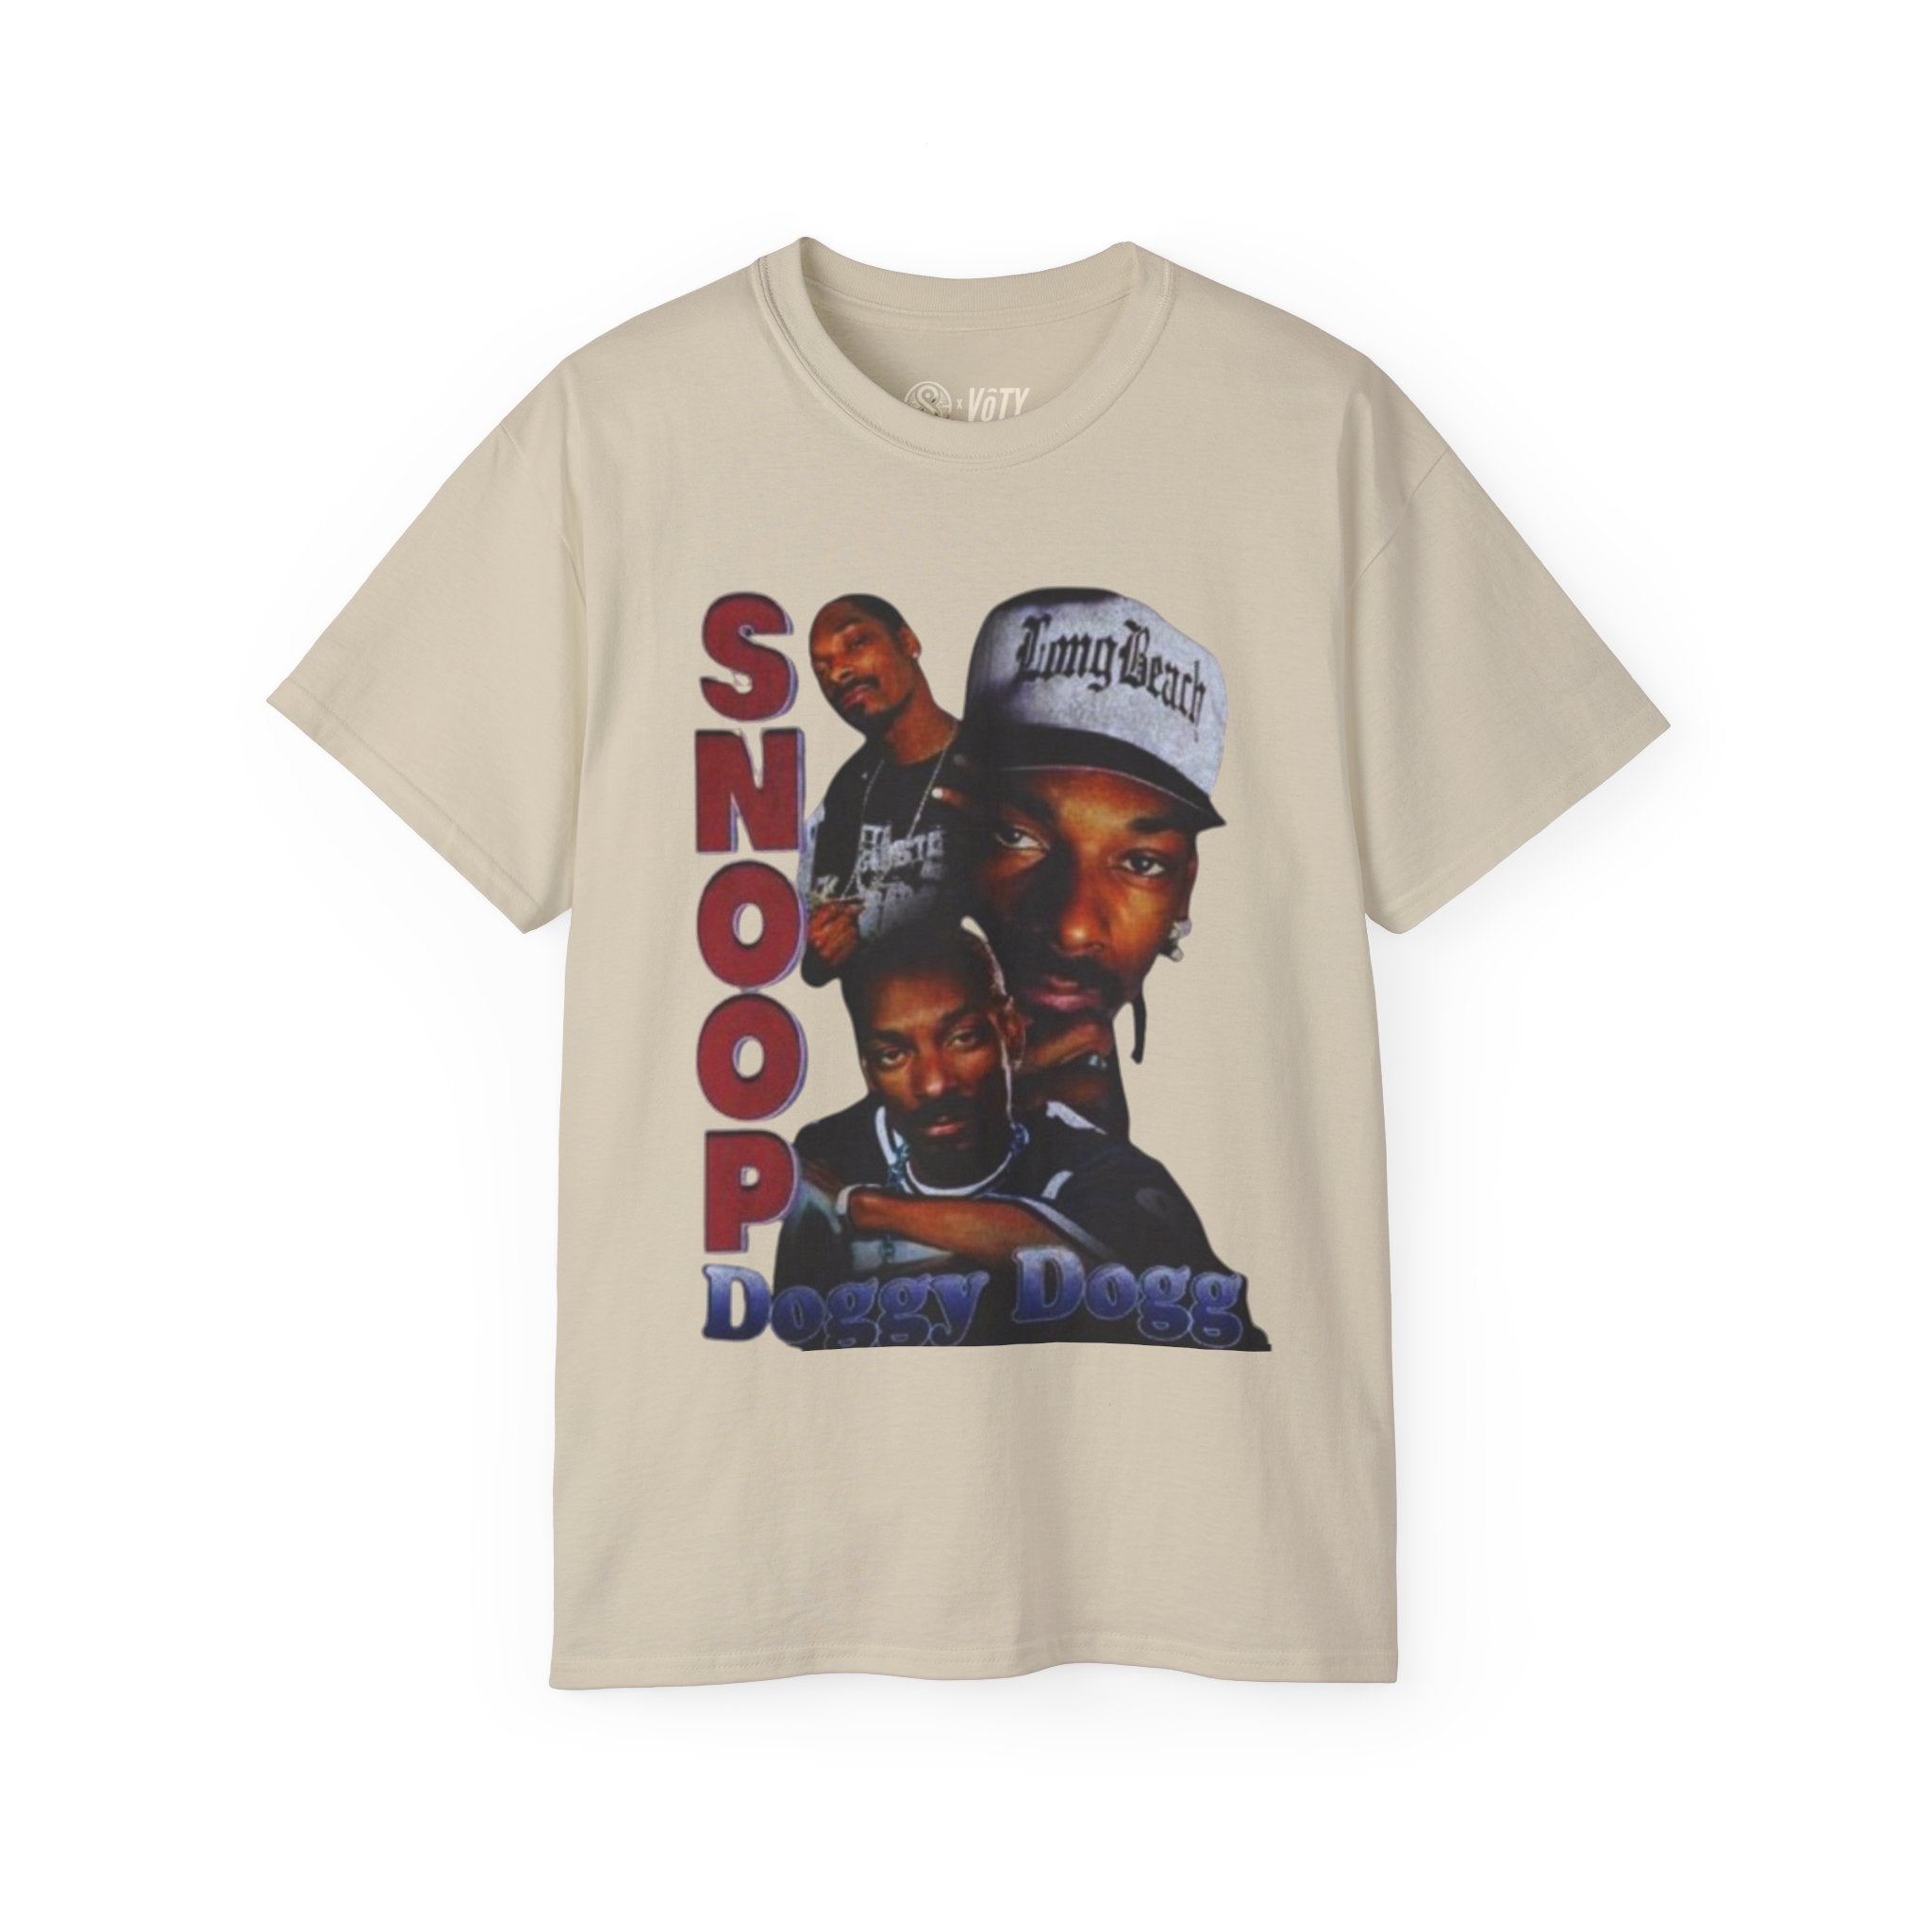 Snoop Dogg "Long Beach" T-Shirt